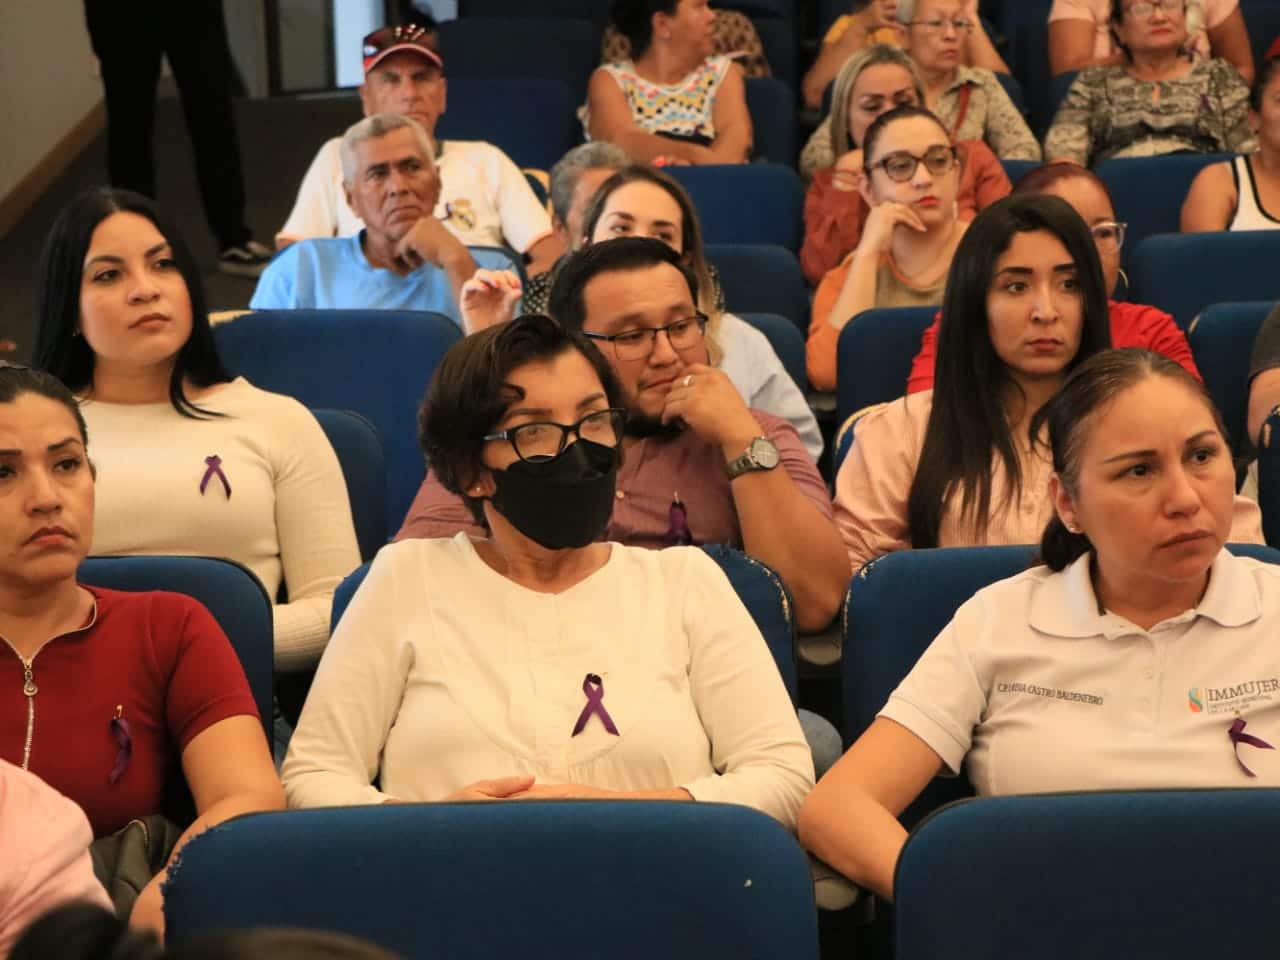 Quieren un Mazatlán libre de la violencia a la mujer: realizan Foro de Mujeres Constructoras de Paz